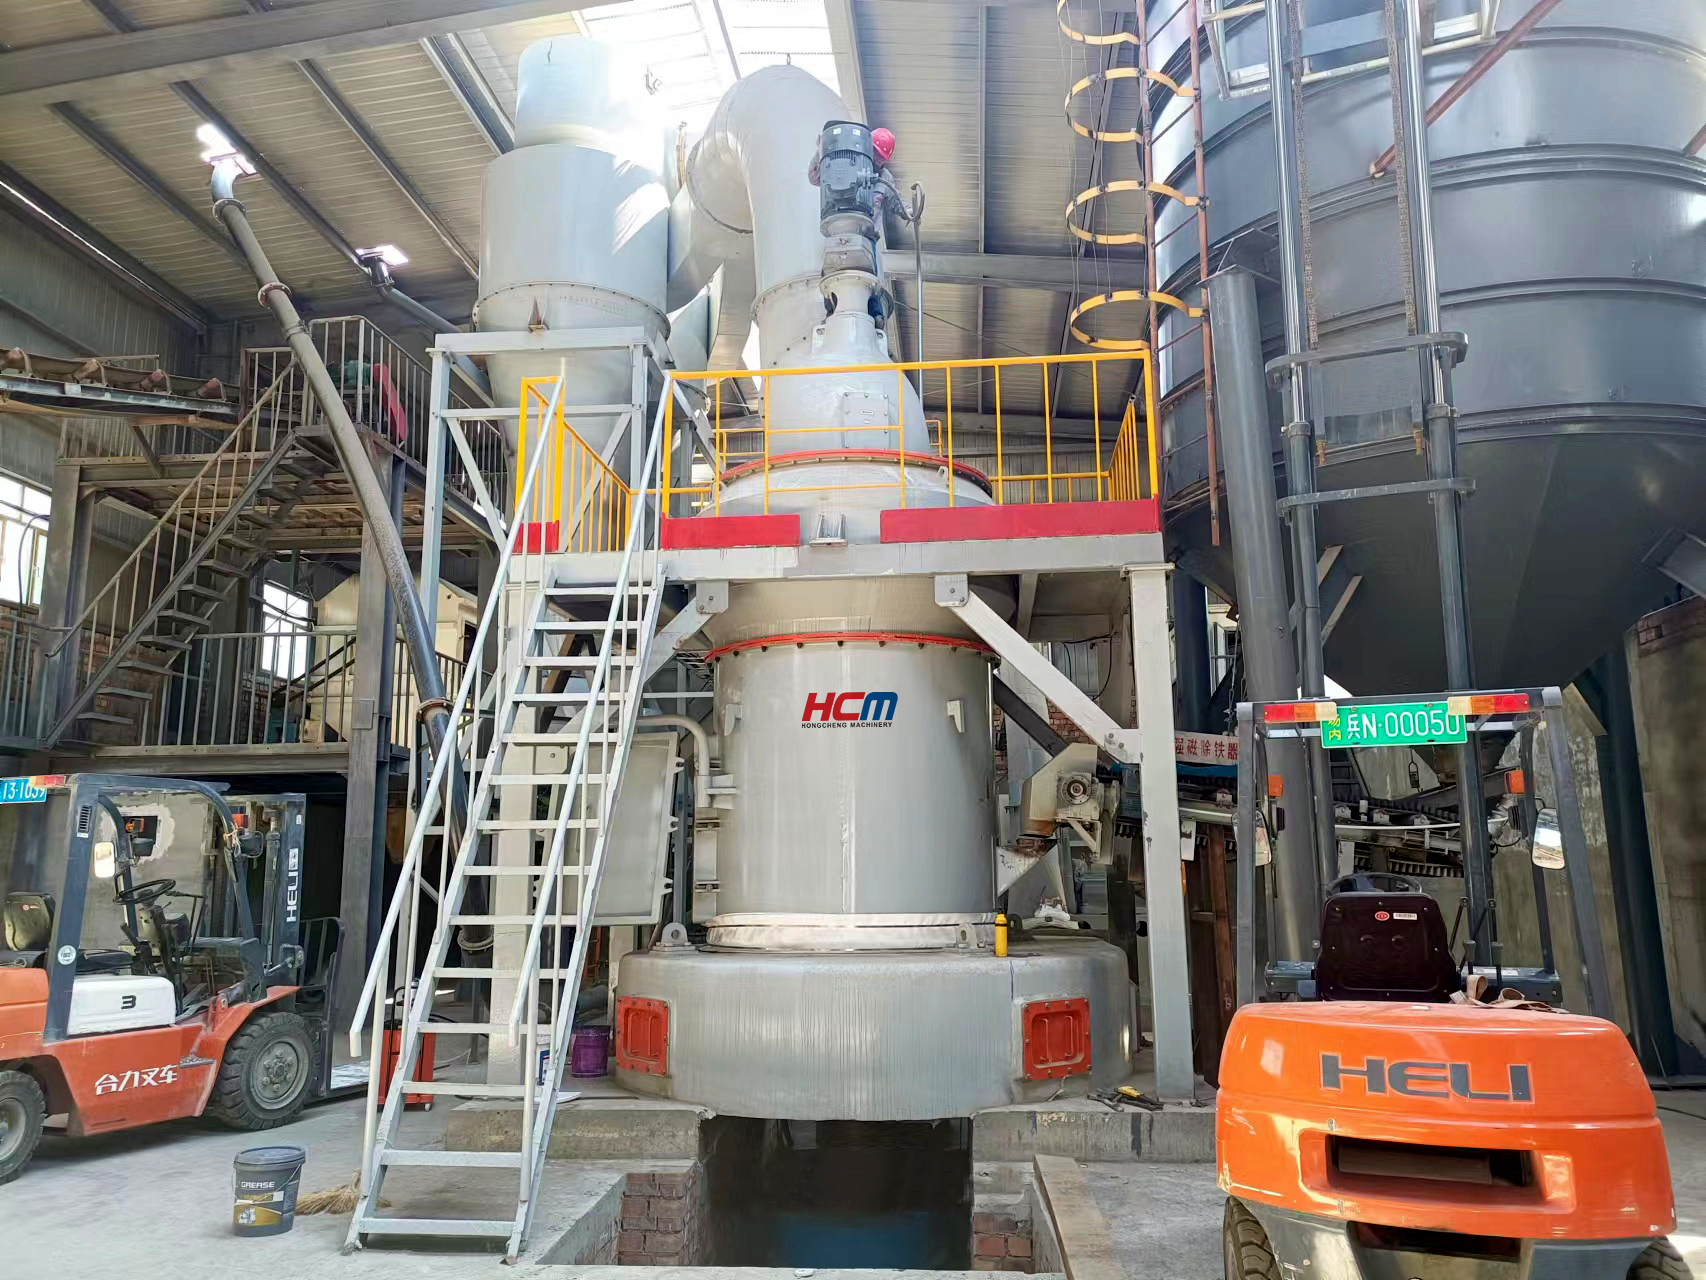 HCMilling(Guilin Hongcheng) E Eketsa Thepa e Ncha 'Marakeng oa Korea - HC1700 Sodium Bicarbonate Milling Mill.